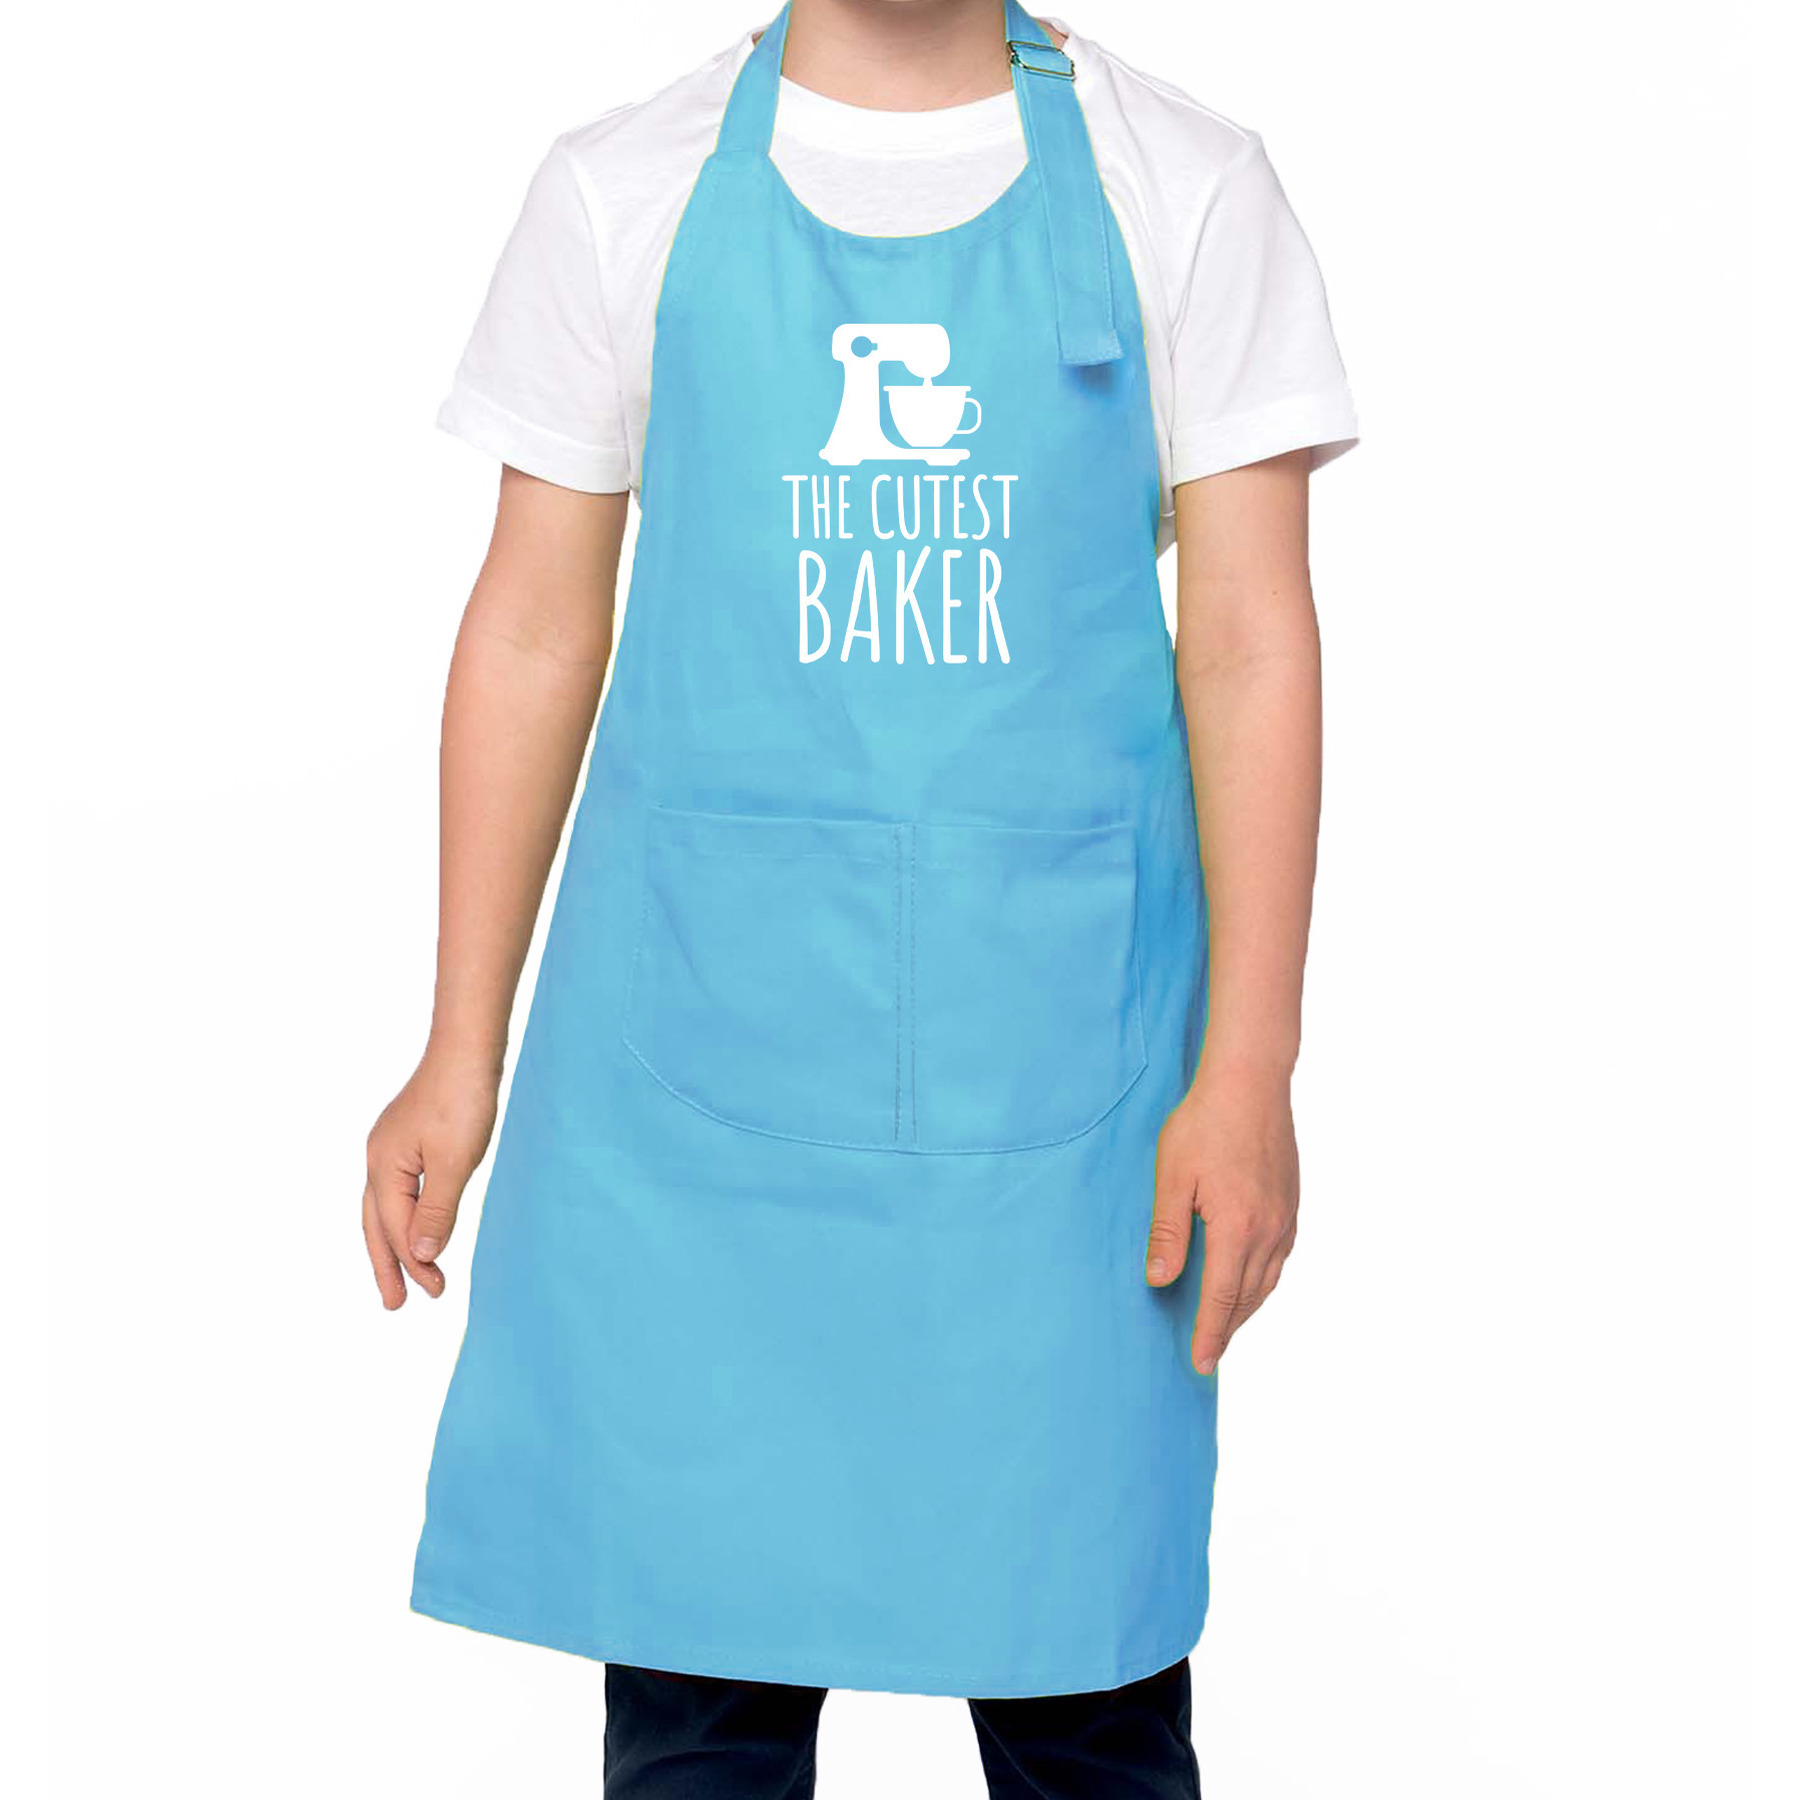 The cutest baker keukenschort- kinder bakschort blauw voor jongens en meisjes Bakken met kinderen